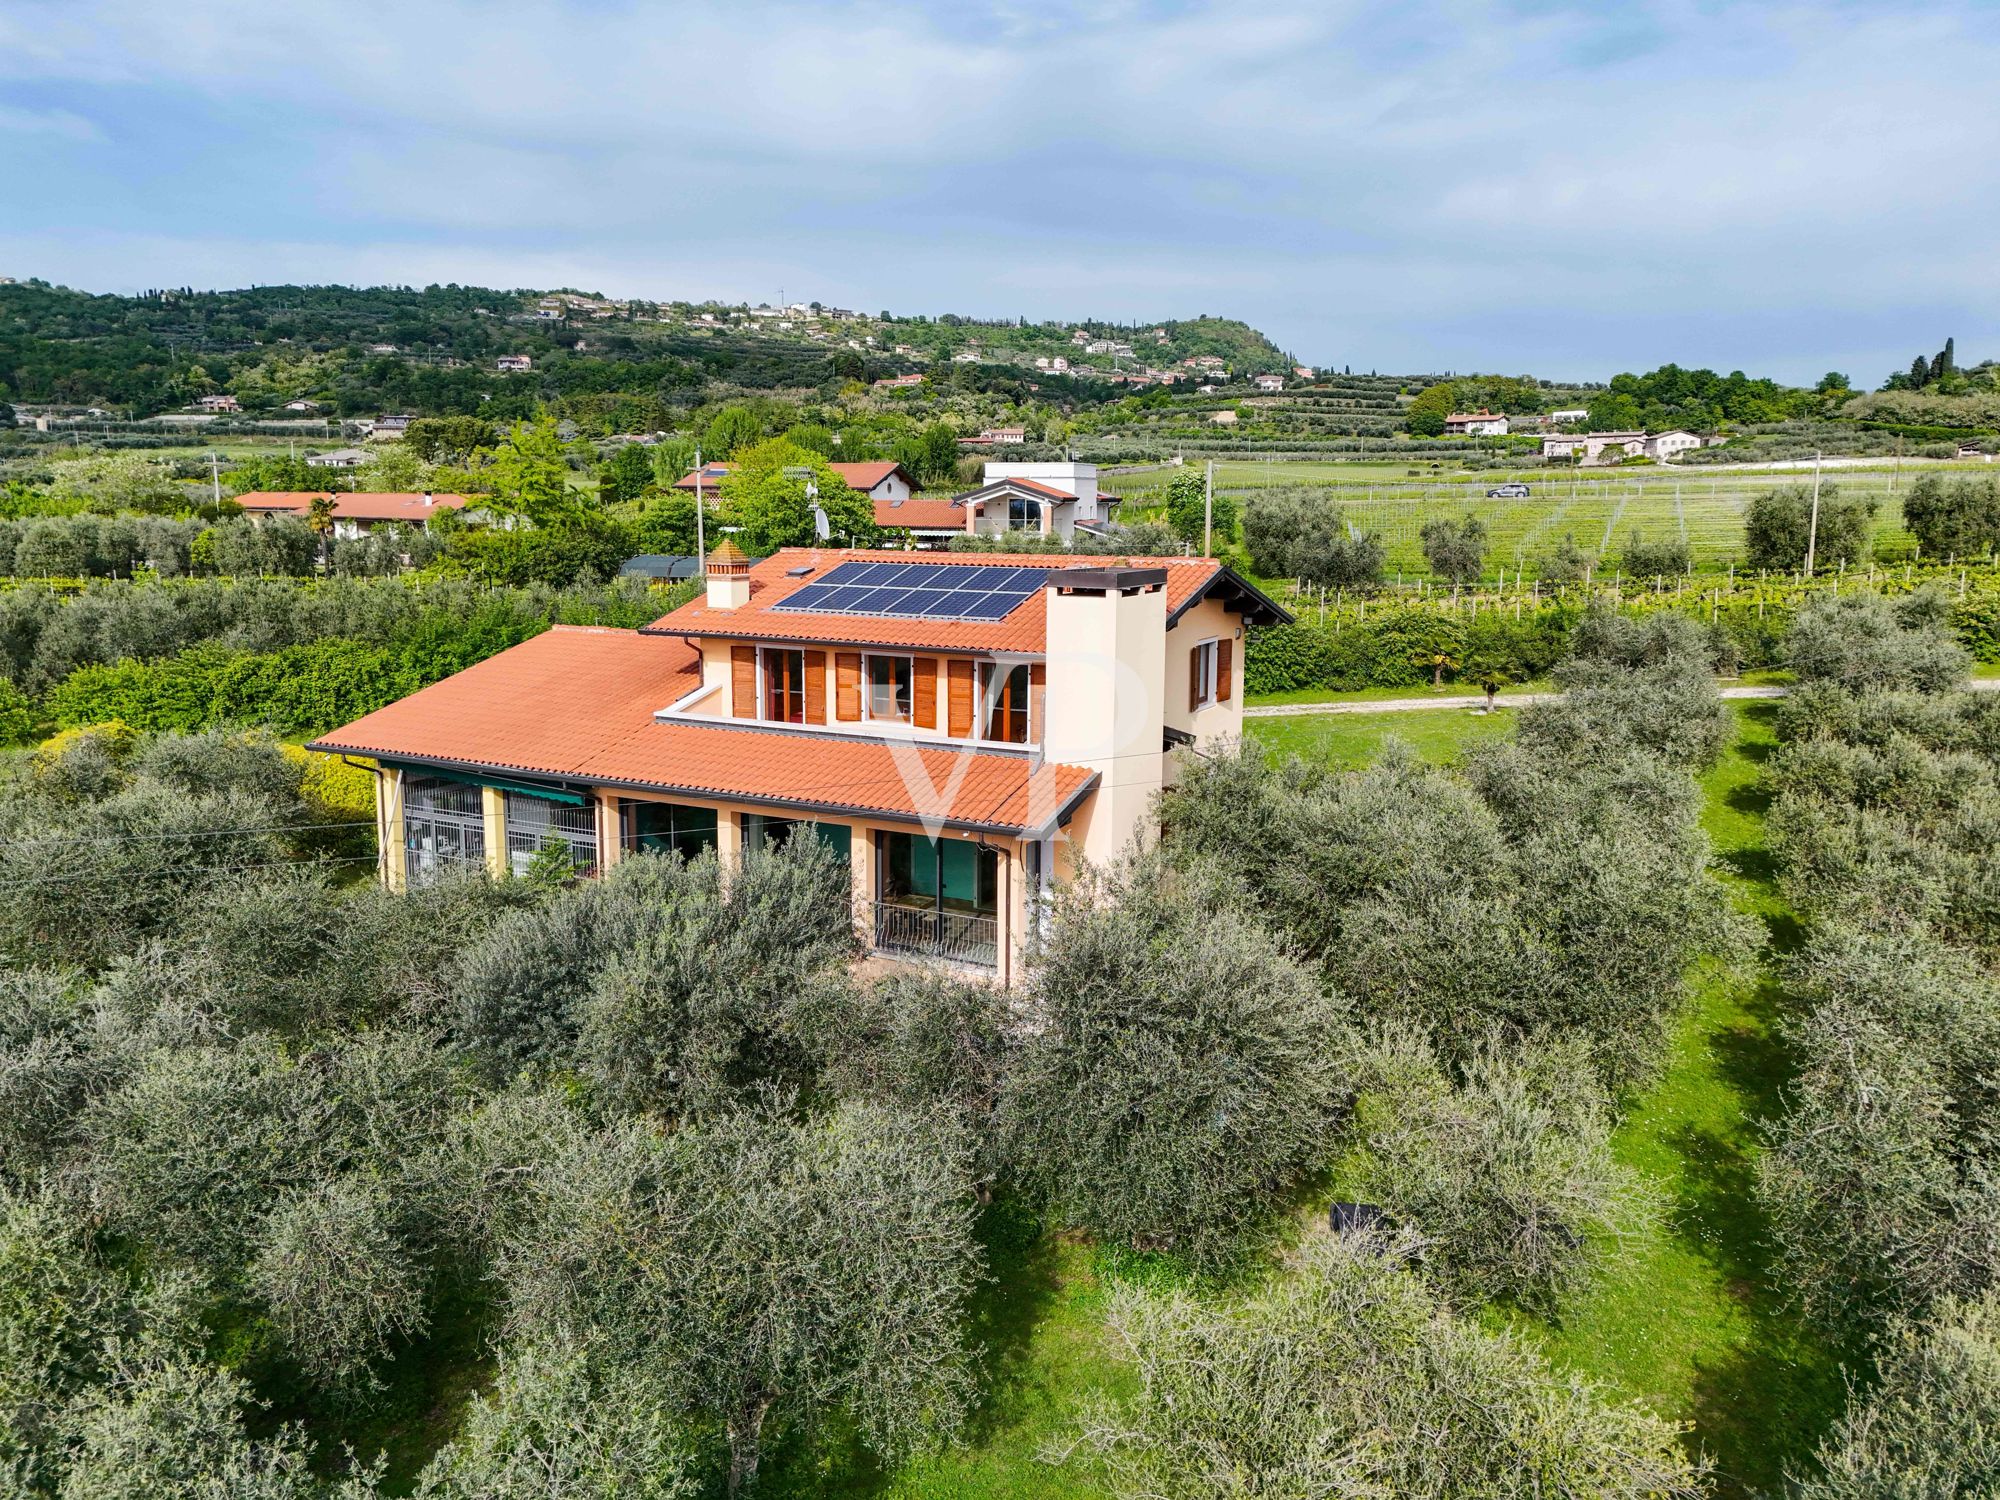 Maison de vacances, agritourisme, manège et B&B nichés dans une oliveraie de 3 hectares